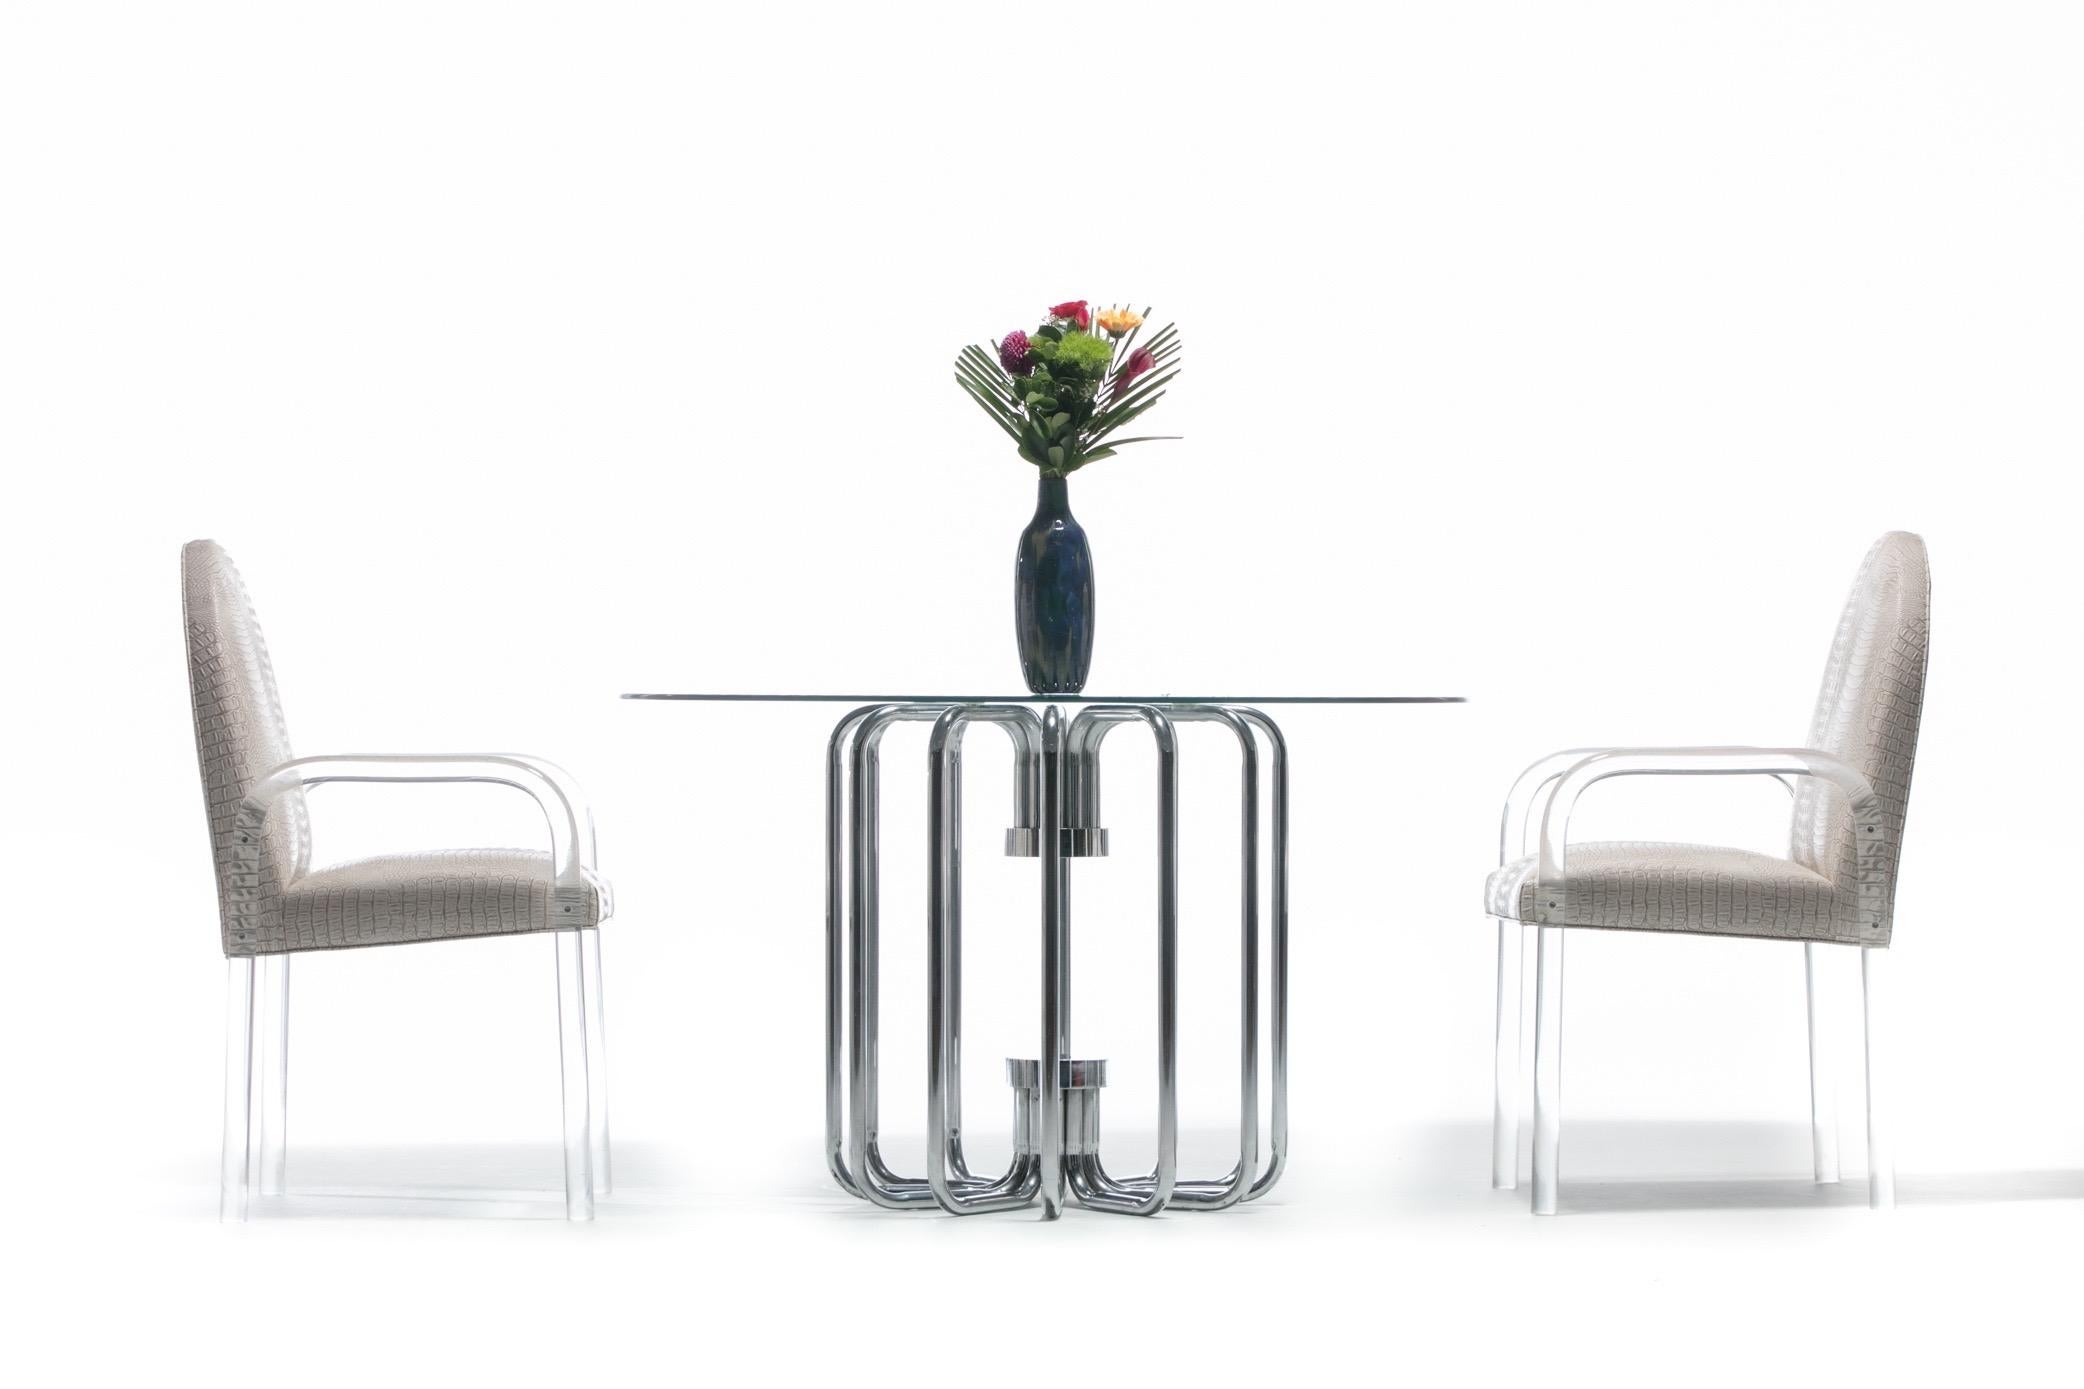 Table de salle à manger ou de centre moderne, élégante et sculpturale, en tube chromé des années 1970. Cette table est tout simplement stupéfiante. Les photographies rendent vraiment compte de sa beauté. Les supports chromés incurvés reflètent et